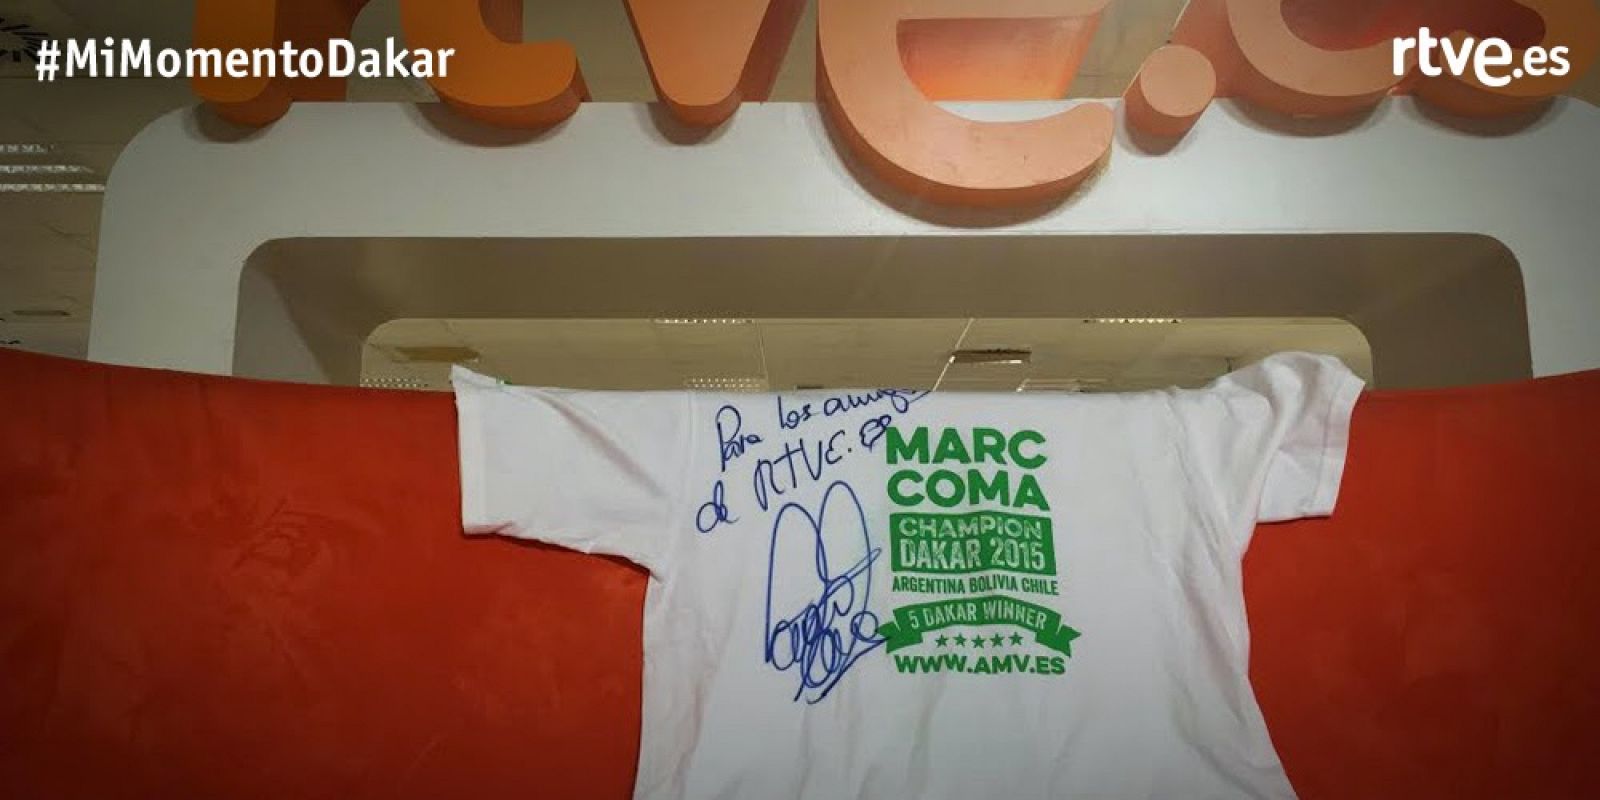 Llévate la camiseta firmada por Marc Coma con #MiMomentoDakar